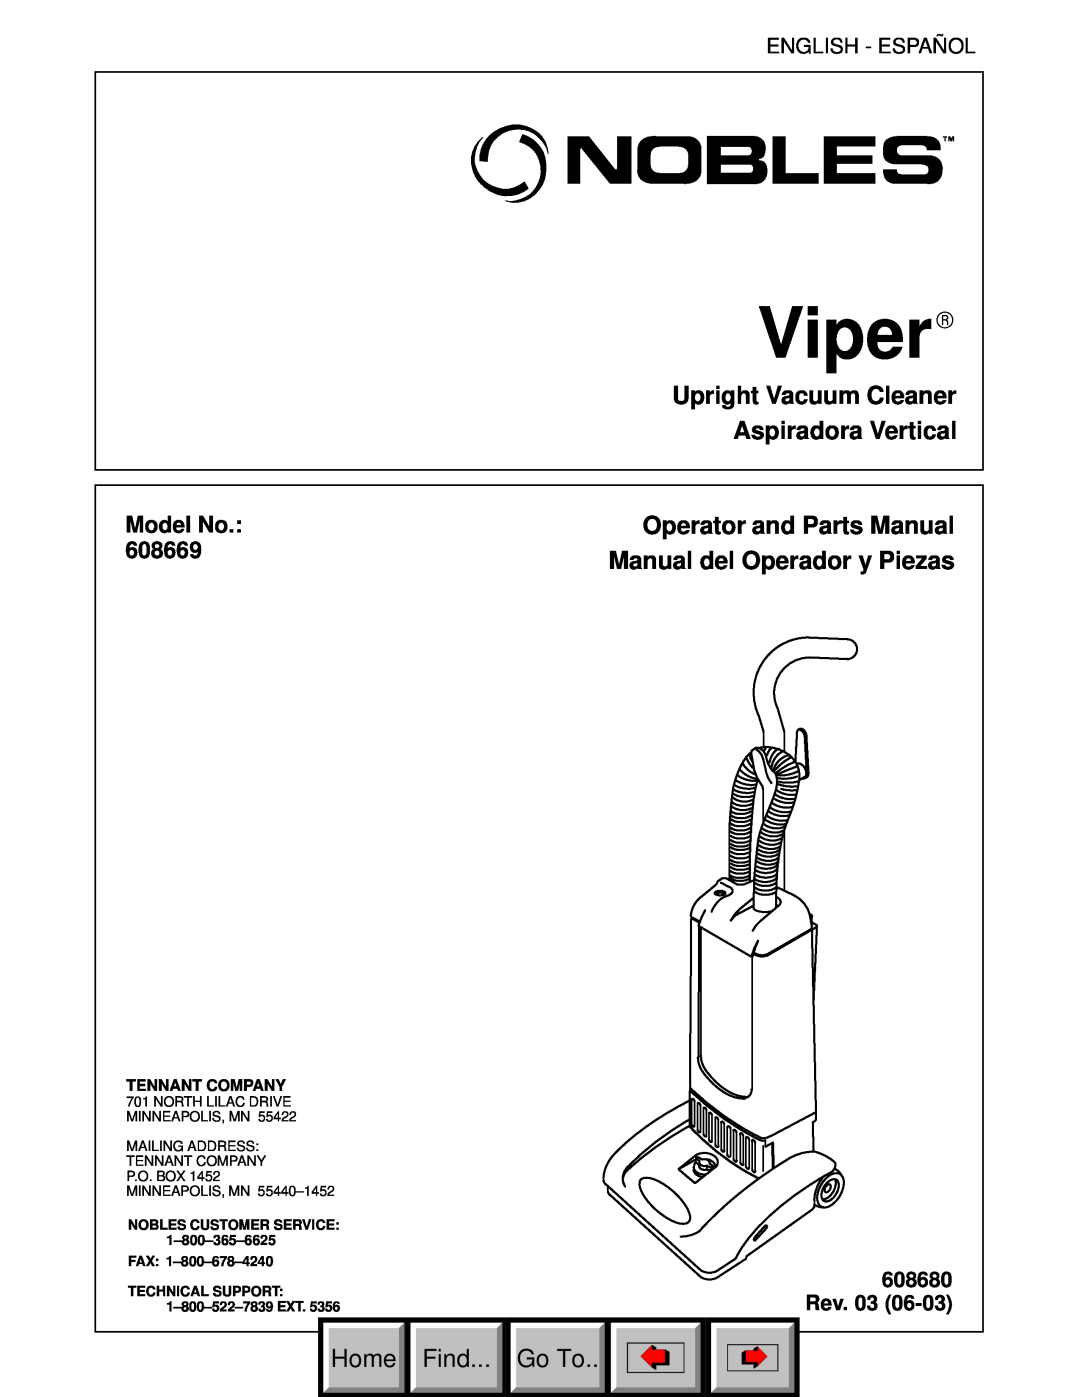 Philips 608669 manual Upright Vacuum Cleaner Aspiradora Vertical, Operator and Parts Manual, Manual del Operador y Piezas 